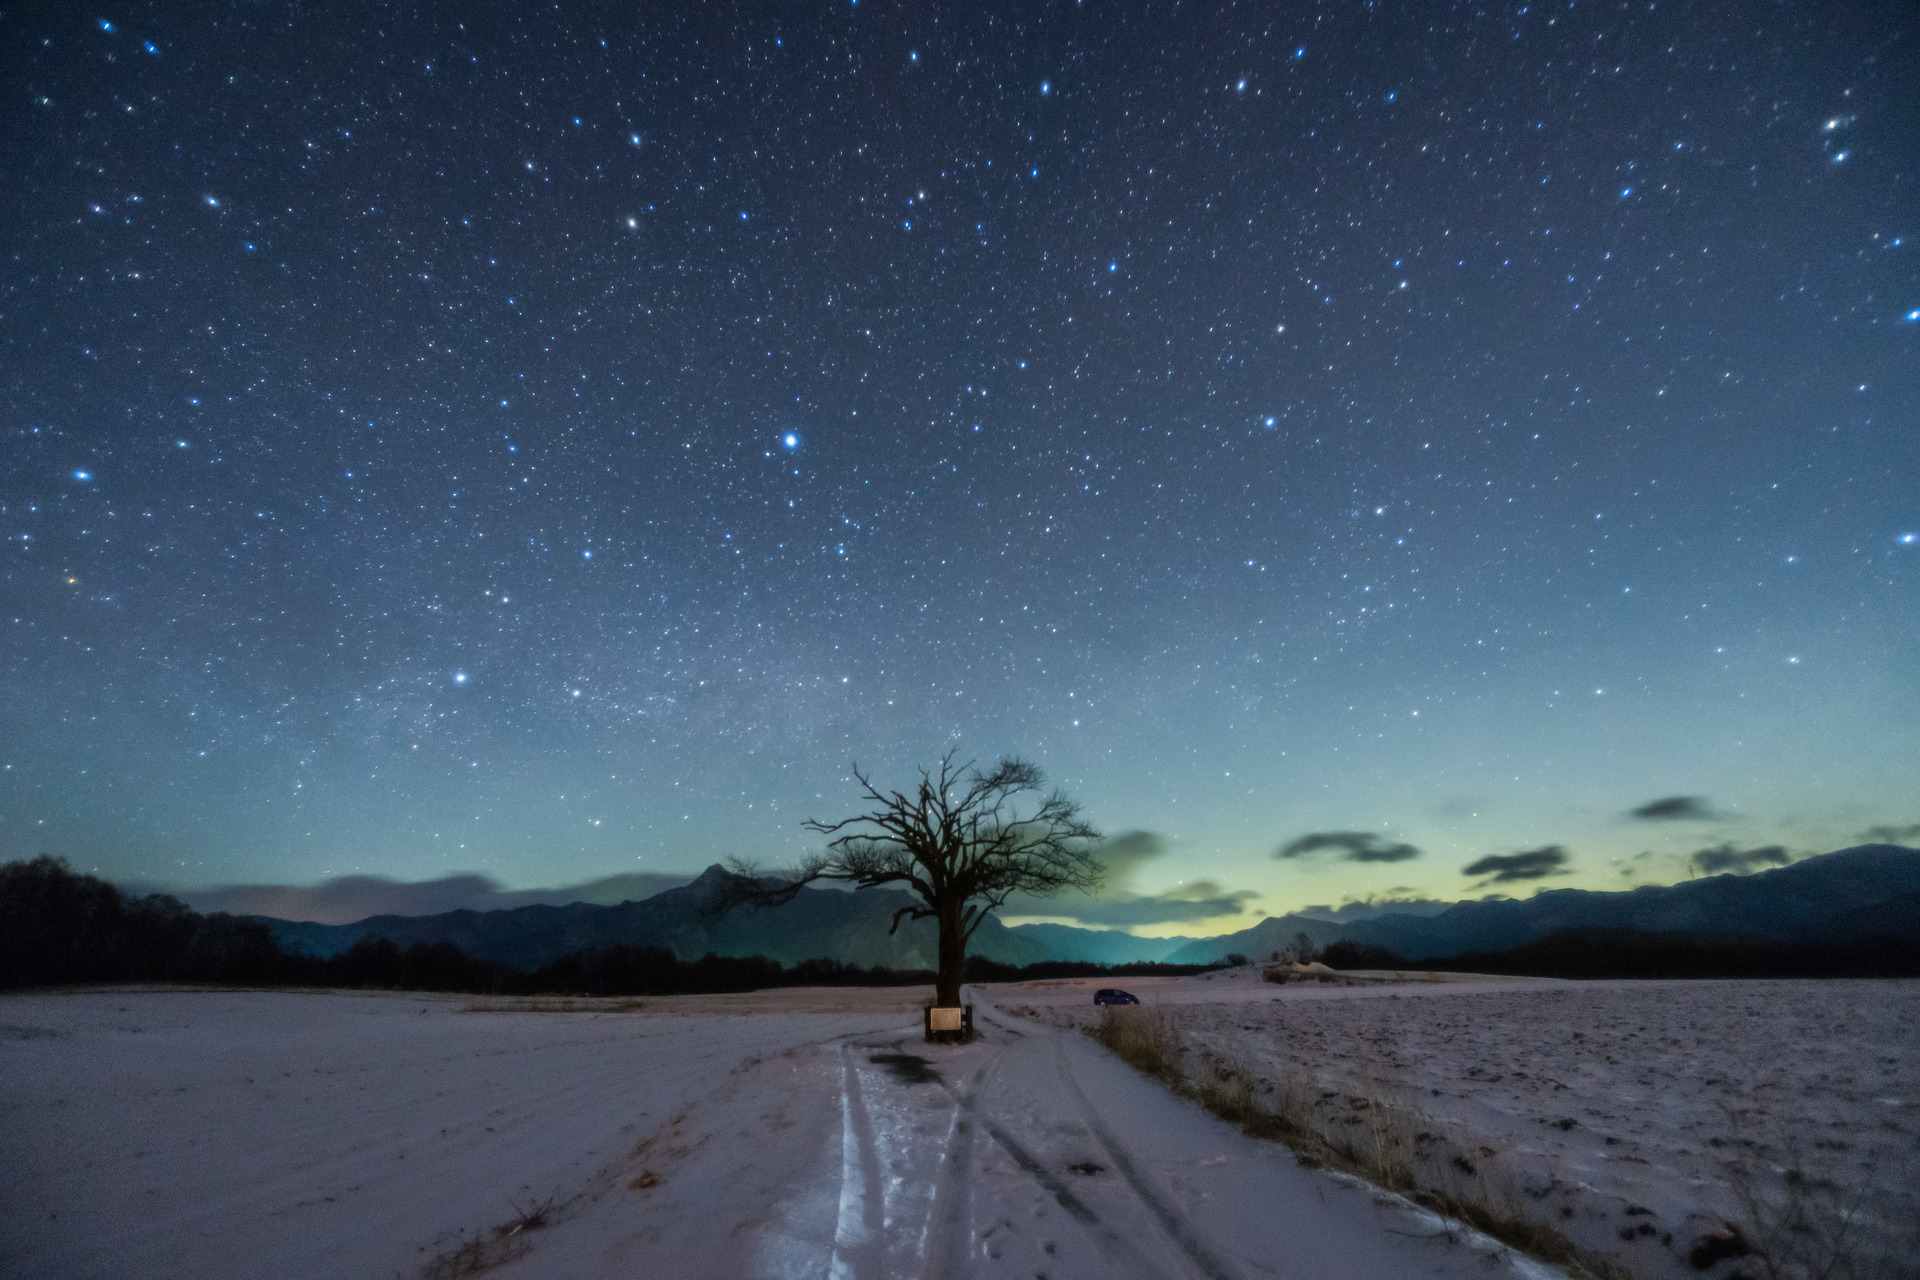 やまなしの木と星空を撮影 極寒の地野辺山高原の星景写真 ブログ